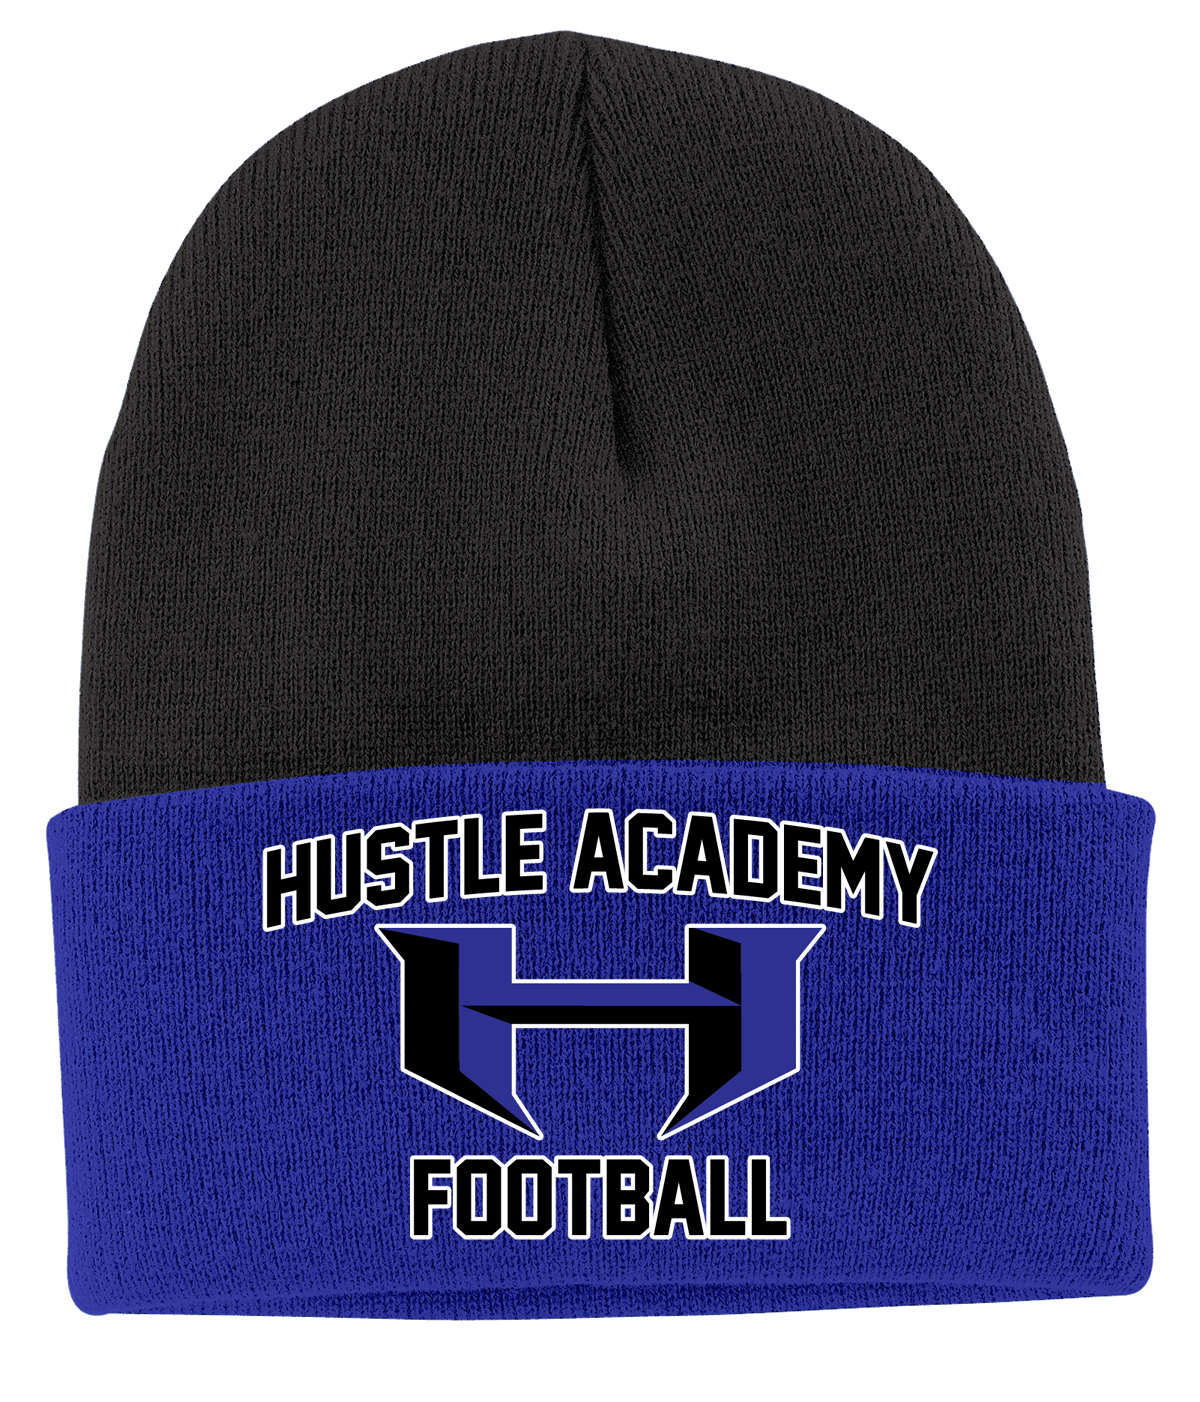 Hustle Academy Football Knit Beanie